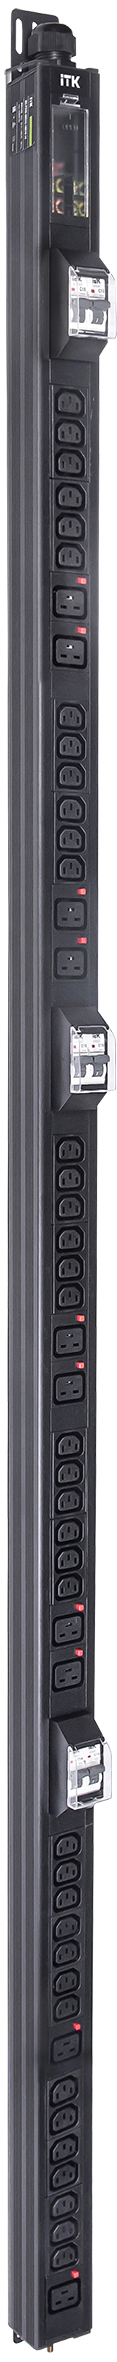 ITK BASE PDU вертикальный PV1113 45U 3 фазы 32А 38 розеток C13 + 10 розеток C19 с клеммной колодкой и кабелем 6м вилка IEC60309 (промышленная) черный